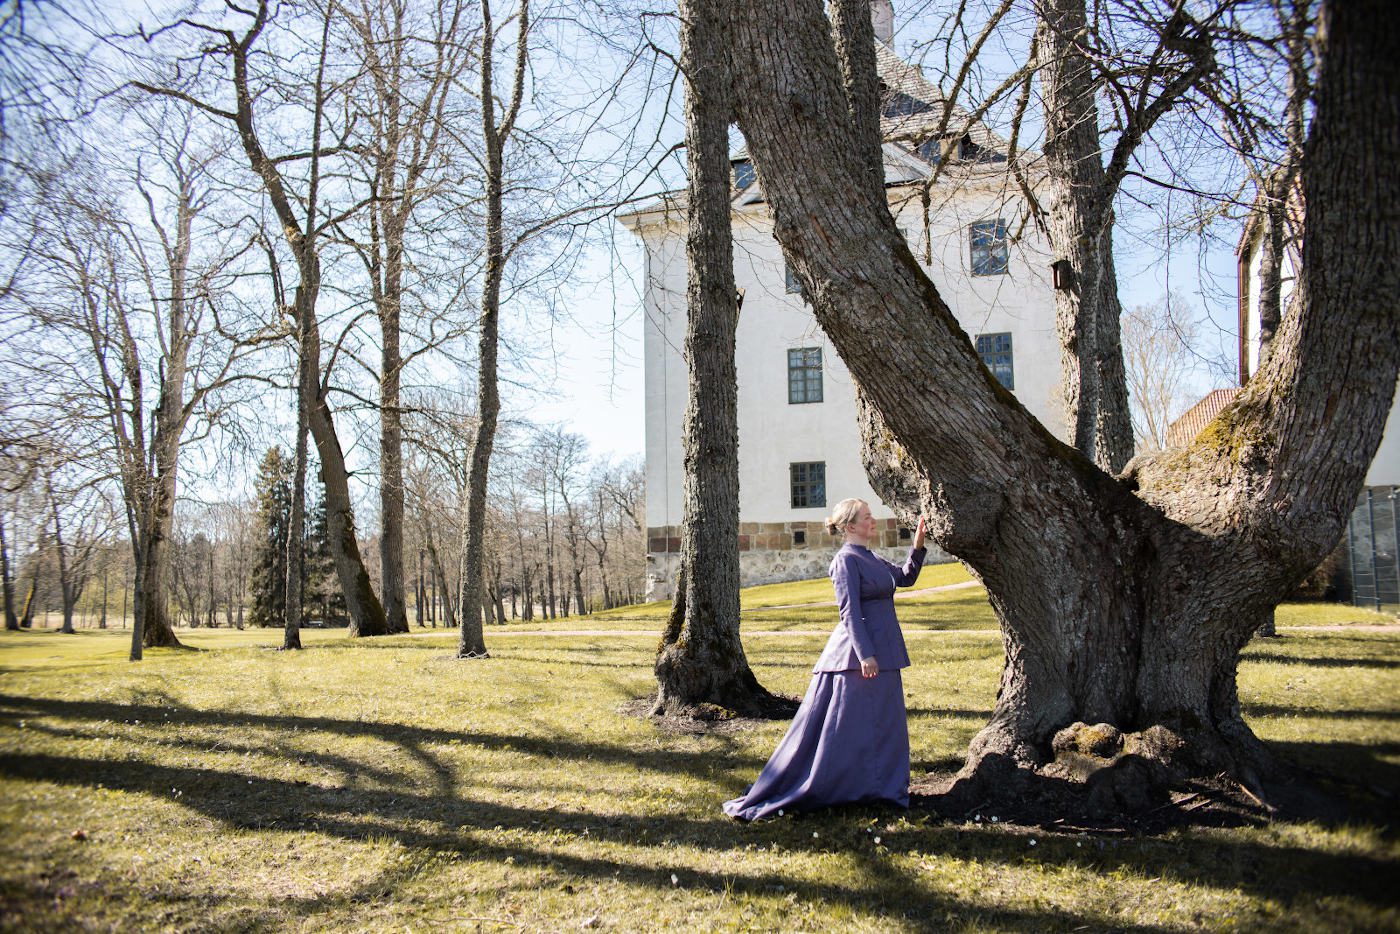 Vanhahtavaan, violettiin asuun pukeutunut nainen koskettaa vanhaa puuta Louhisaaren kartanolinnan puutarhassa.